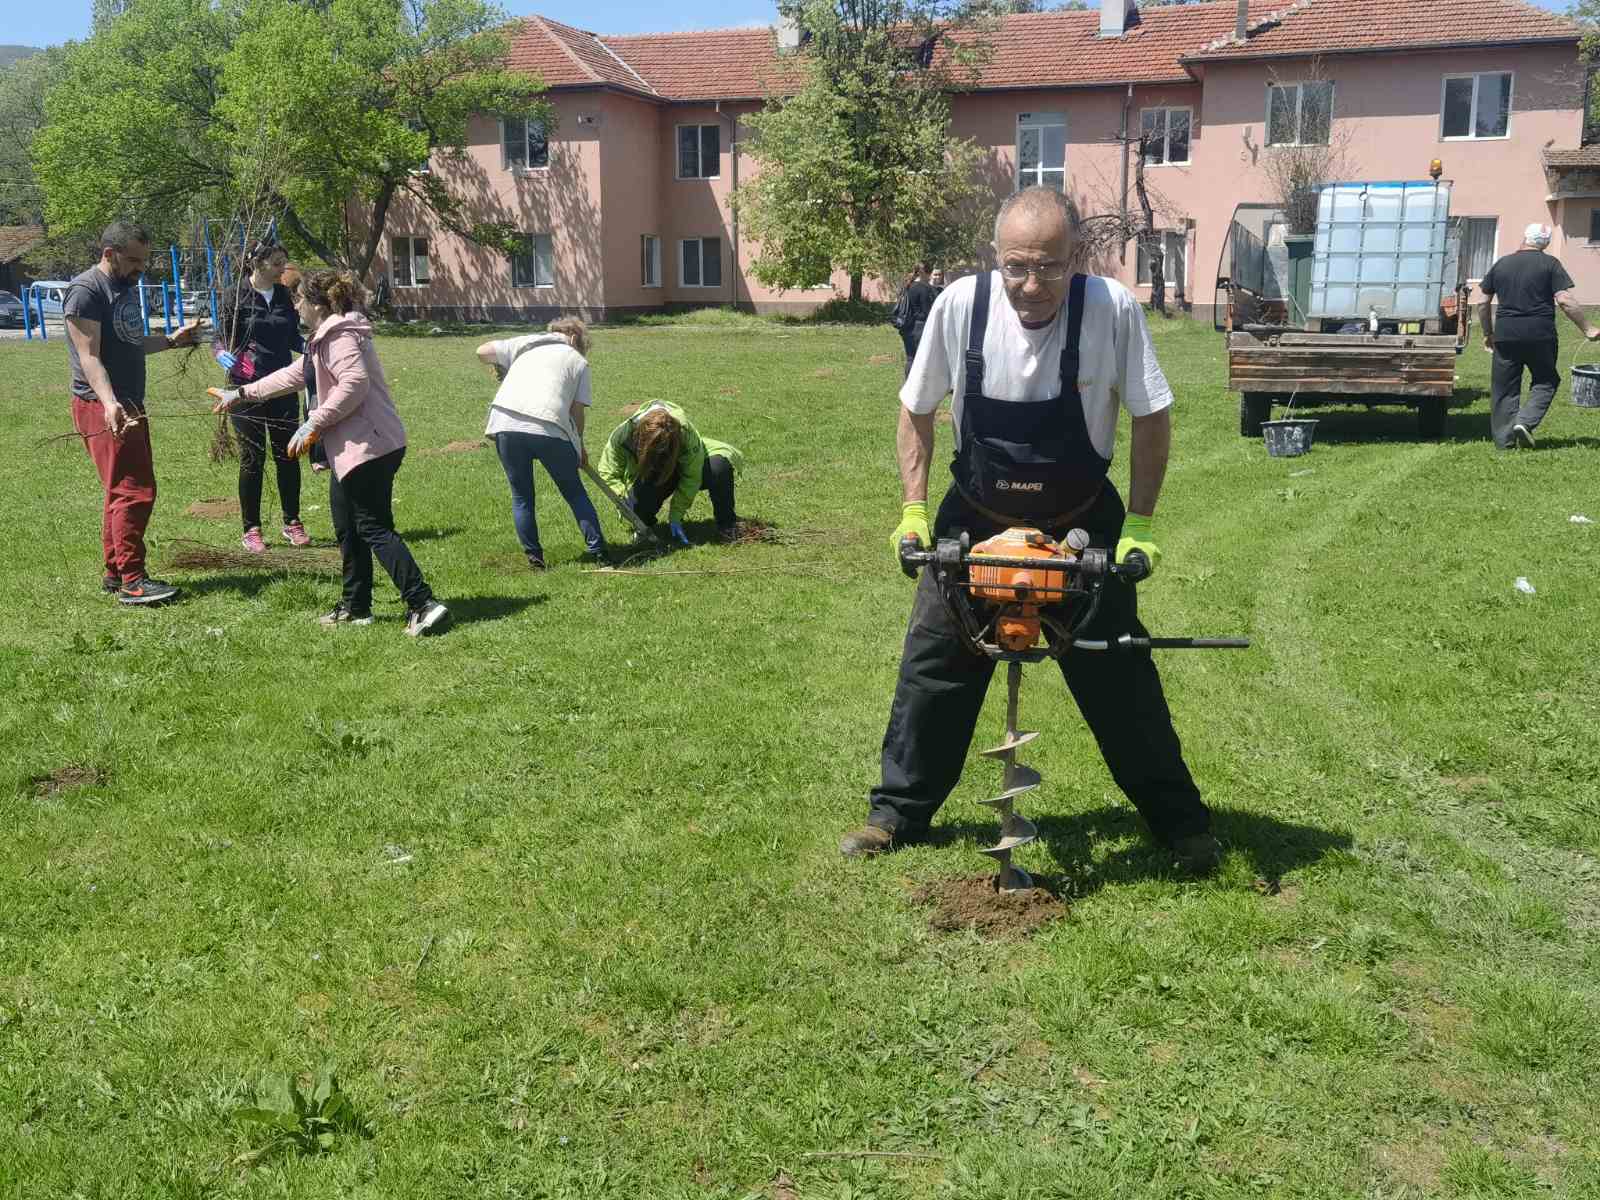 Залесяване в гр. Николаево - 27.04.2022 г. - снимки image